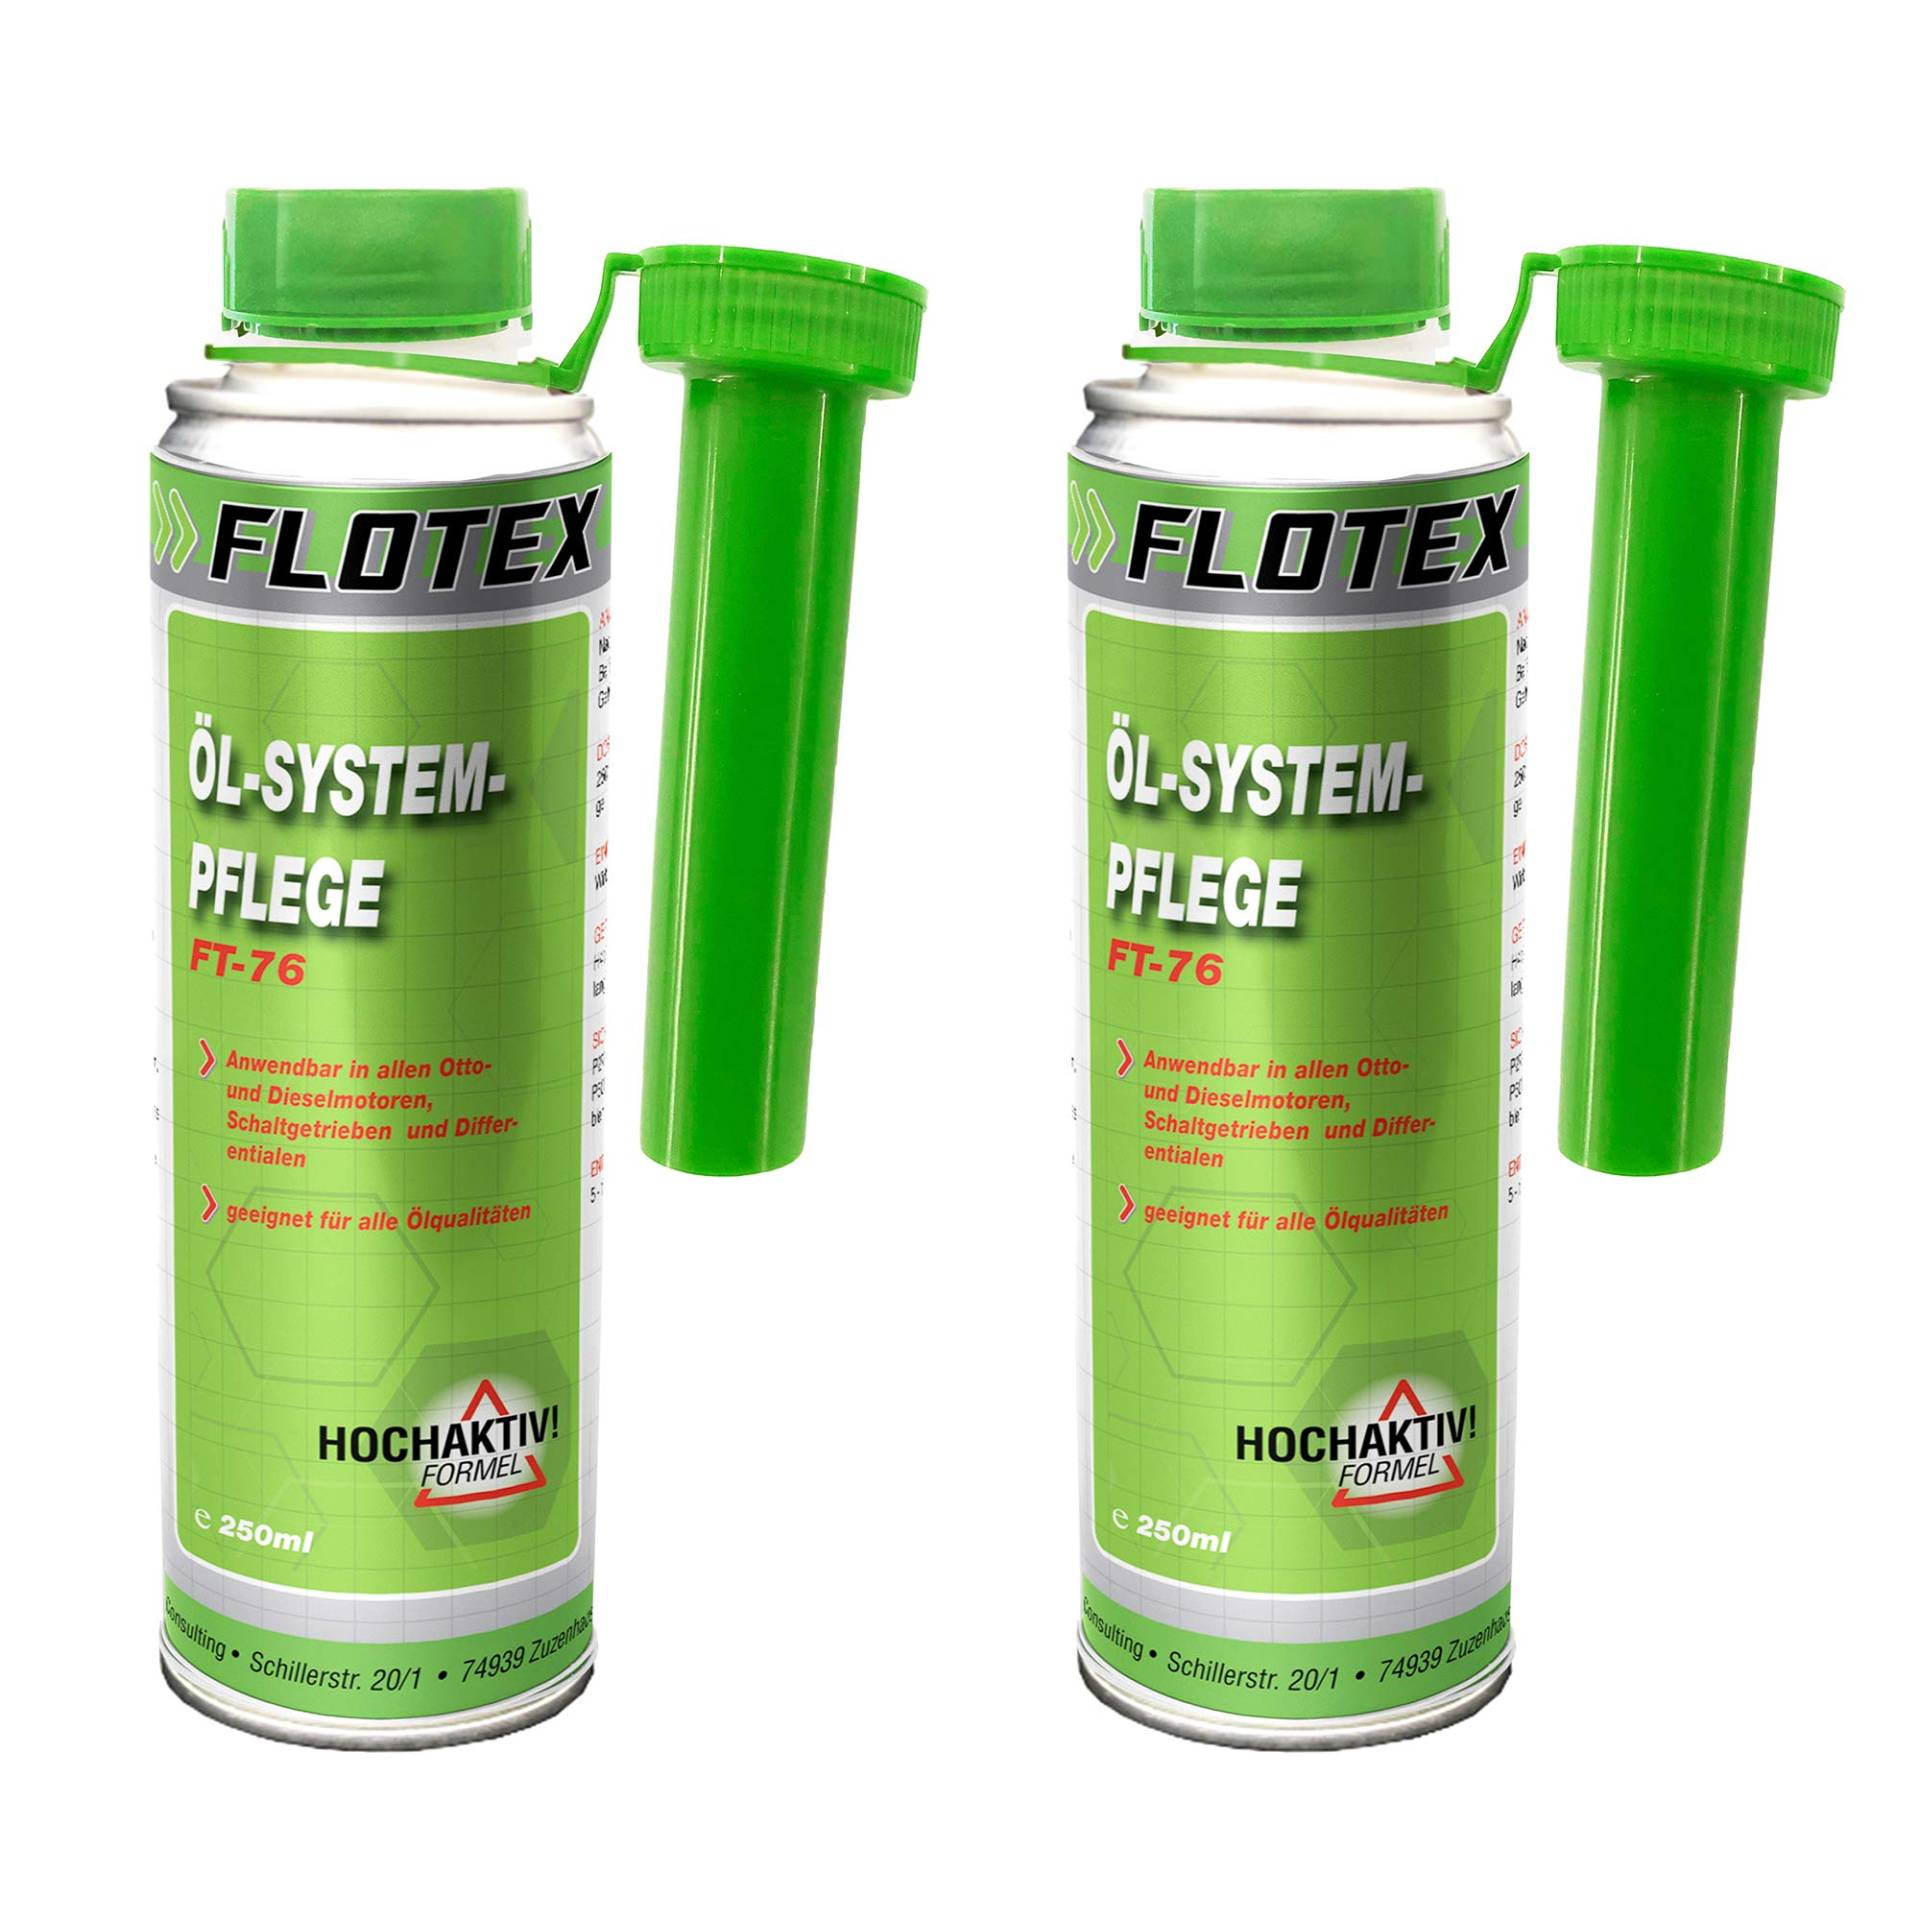 Flotex Öl Systempflege, 2 x 250ml Additiv Öl Booster Reiniger Systemreiniger von Flotex